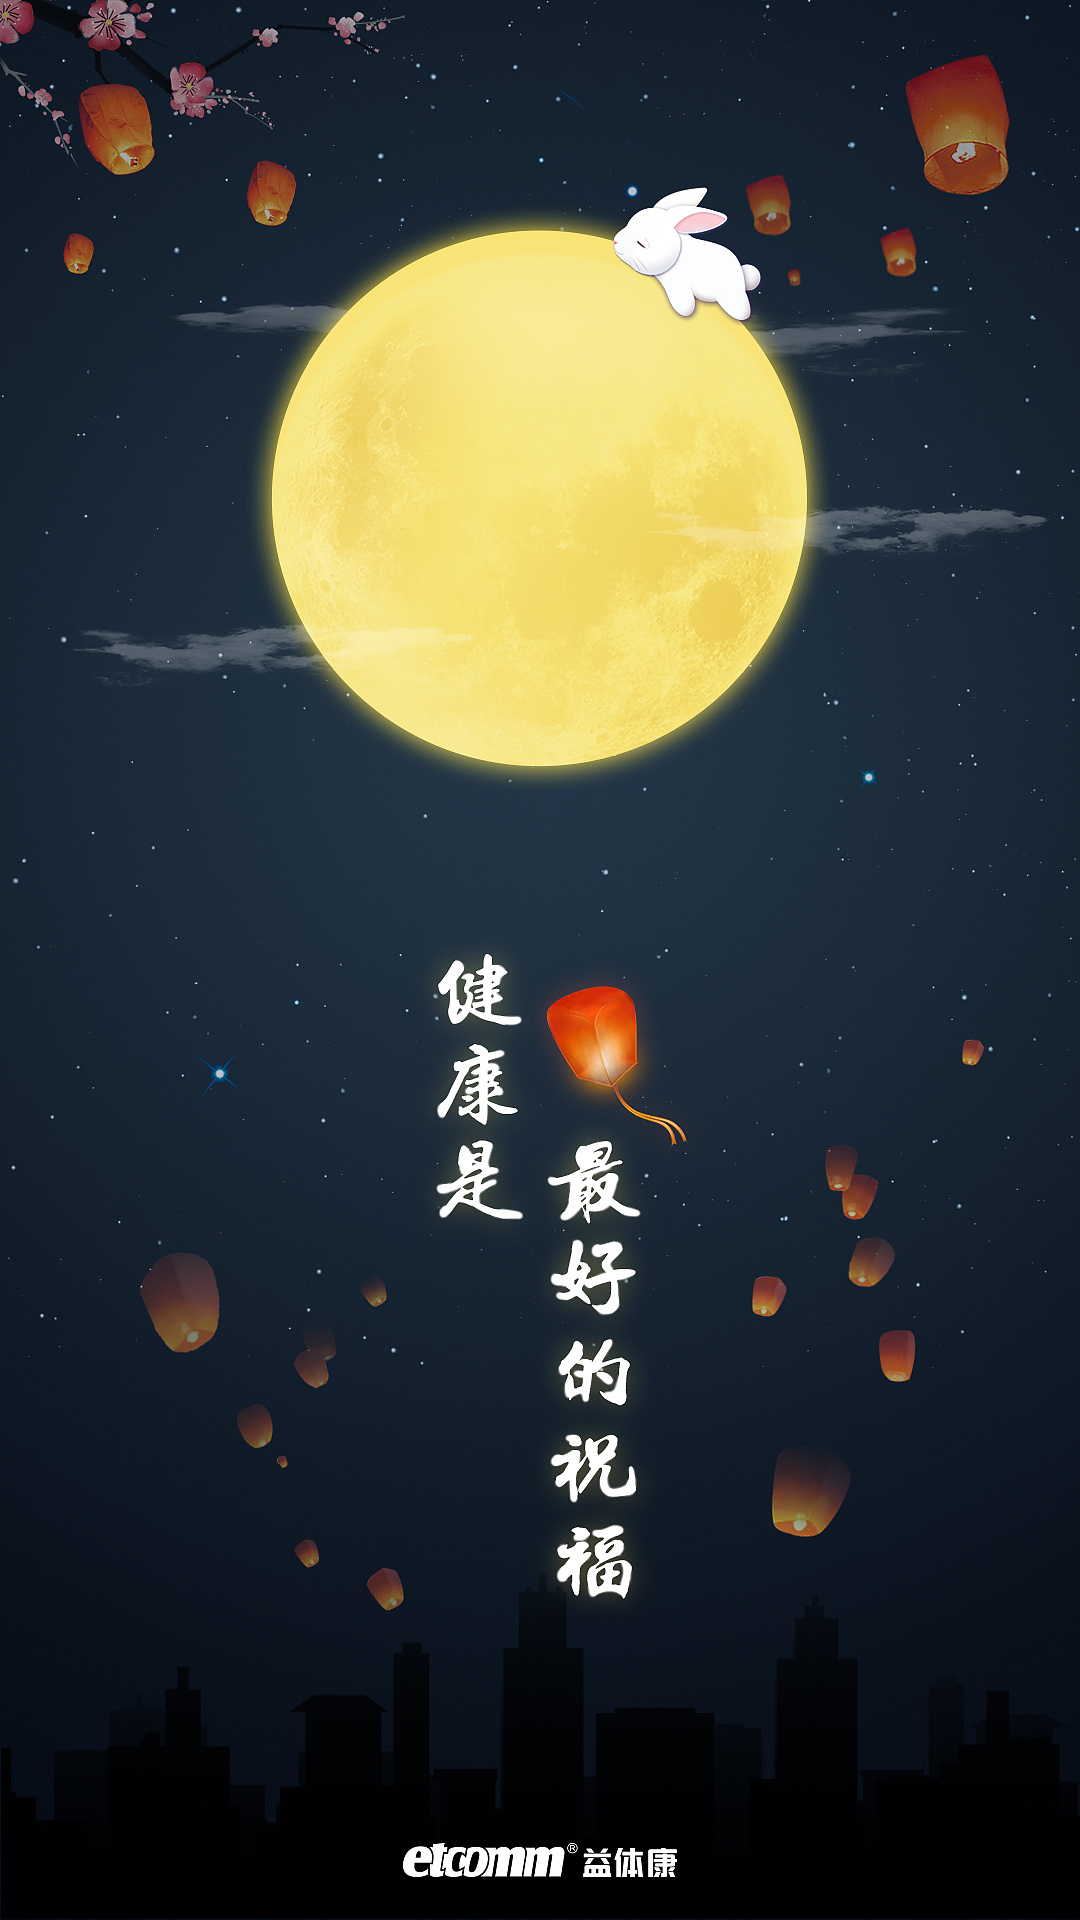 中秋节节日祝福排版月饼兔子手机海报_图片模板素材-稿定设计